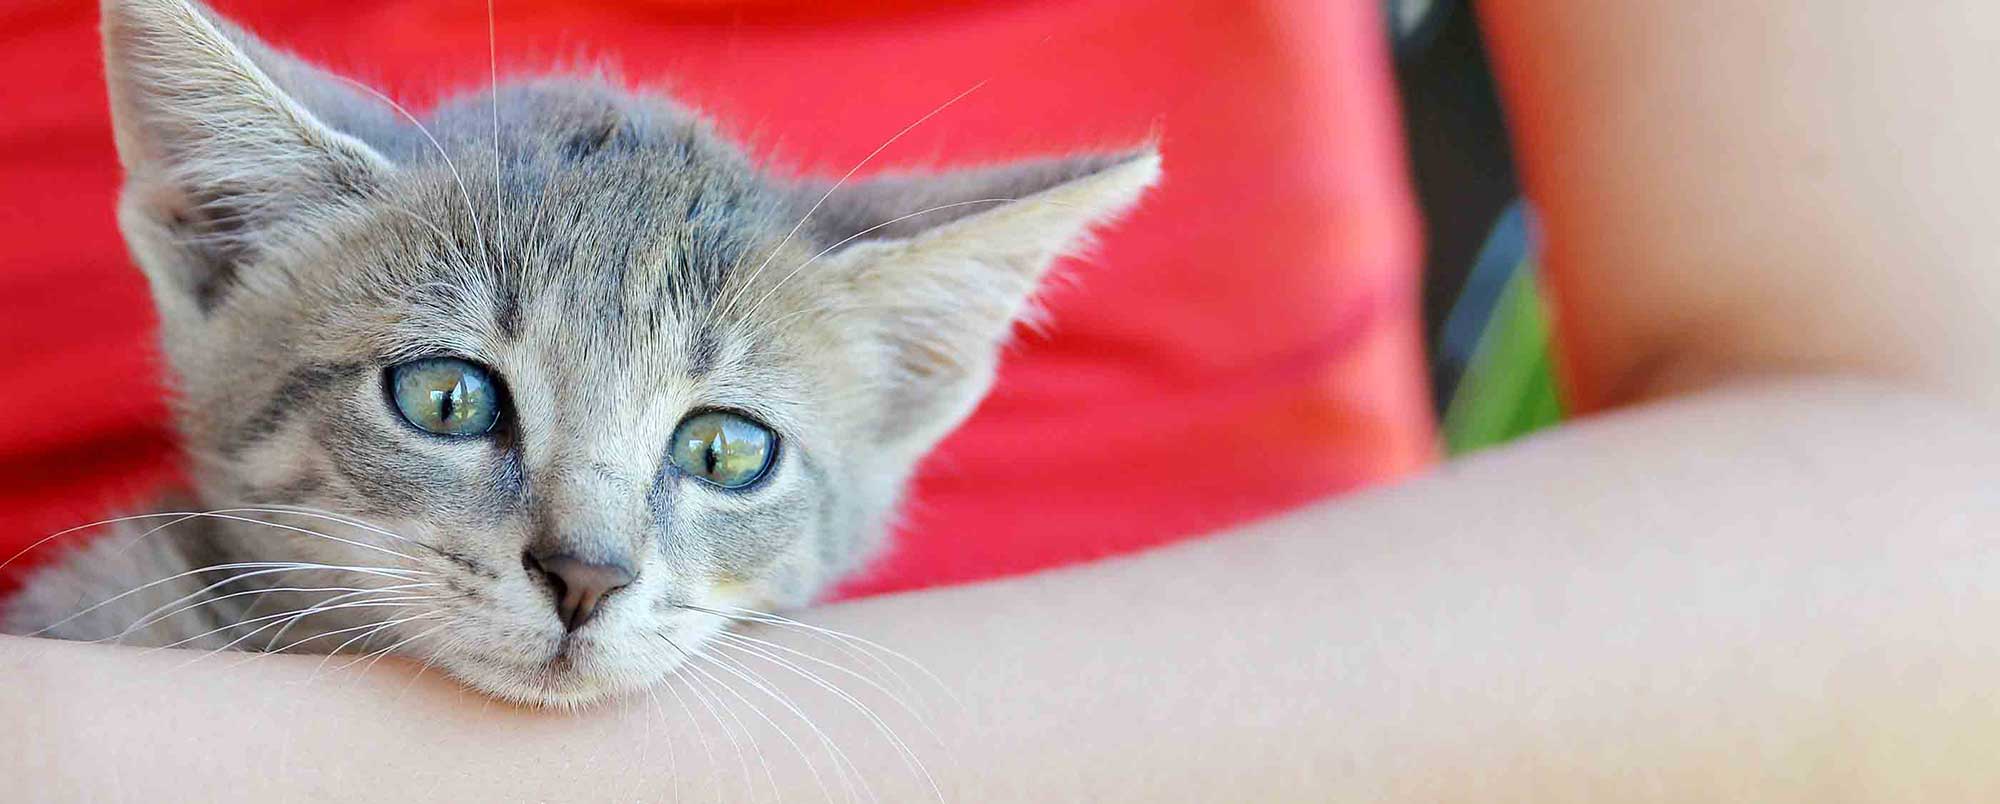 Cute Kitten with Green Eyes